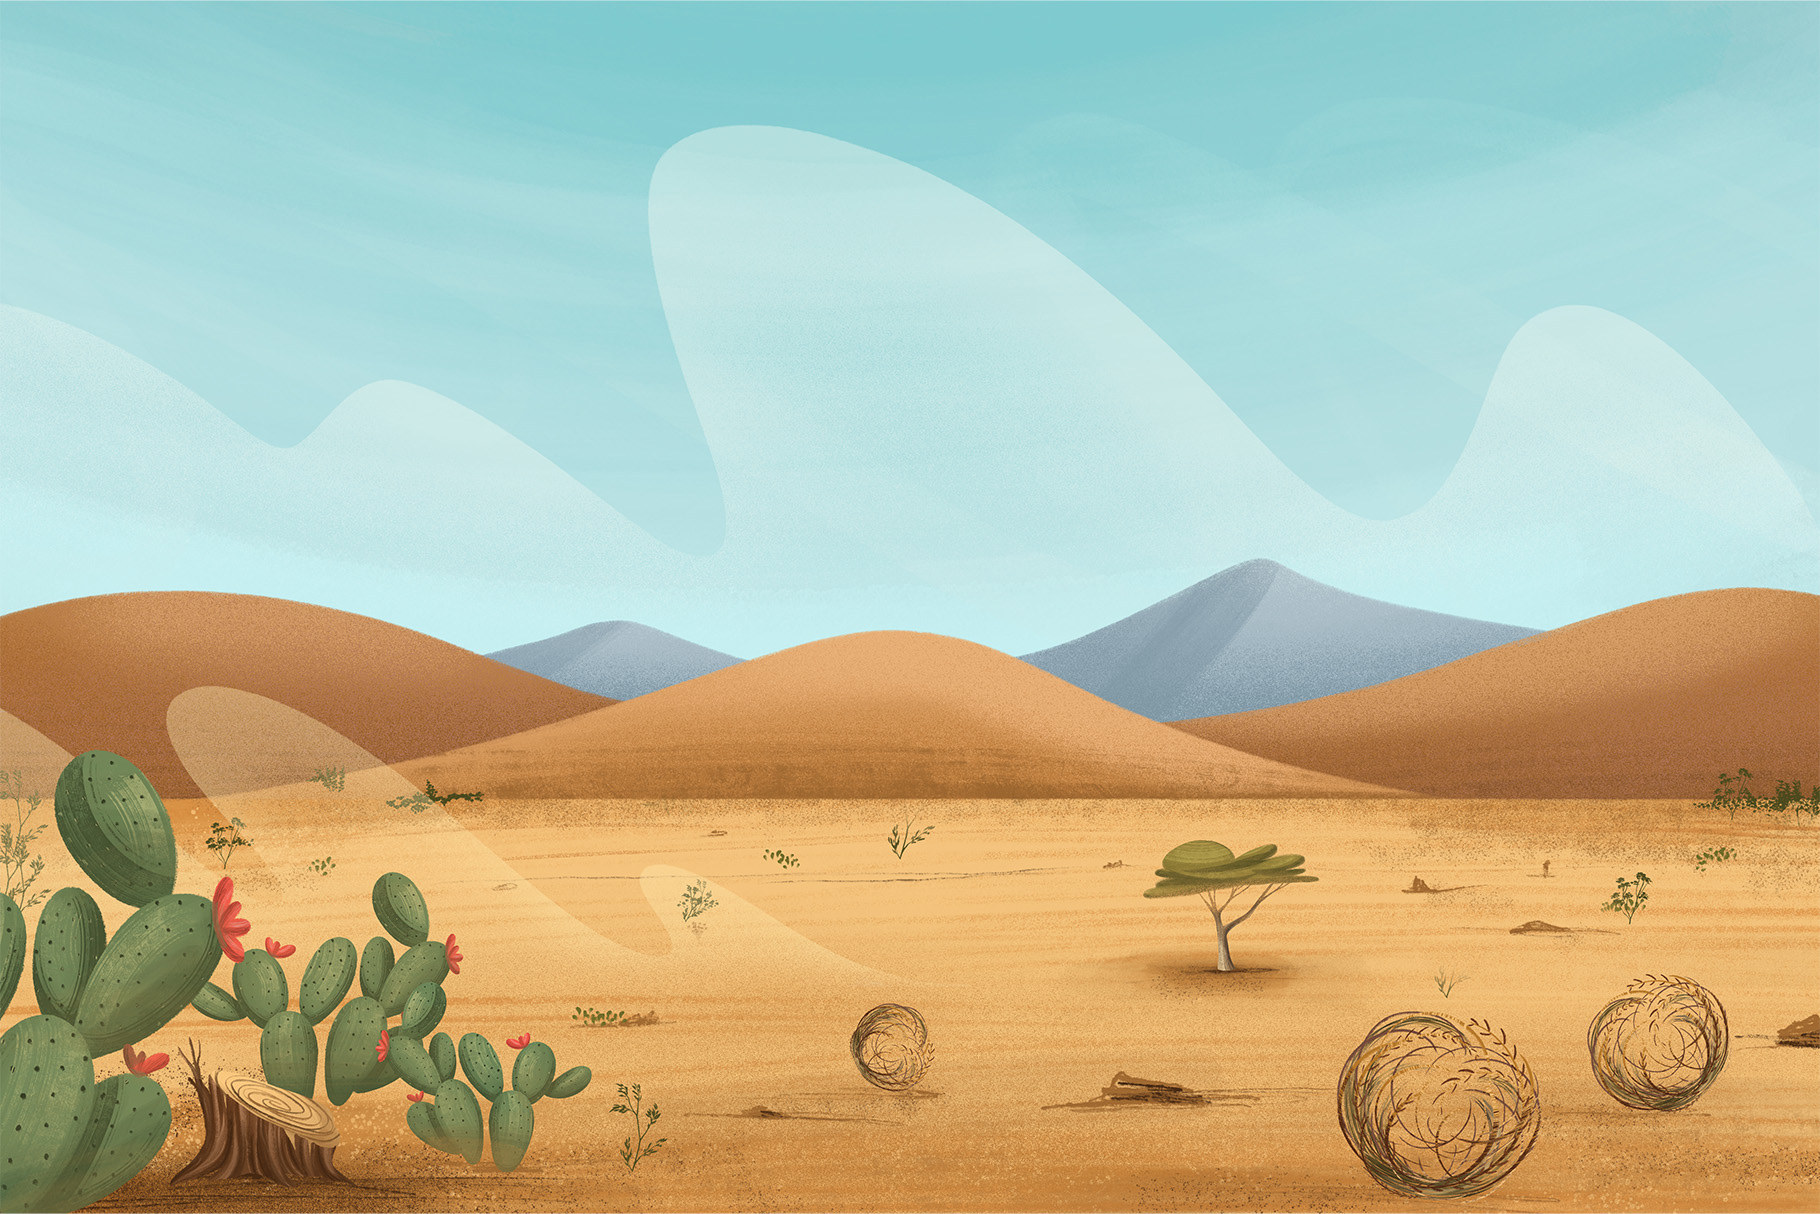 Desert Landscape Background Illustrations Set (PSD, PNG, JPEG Format)